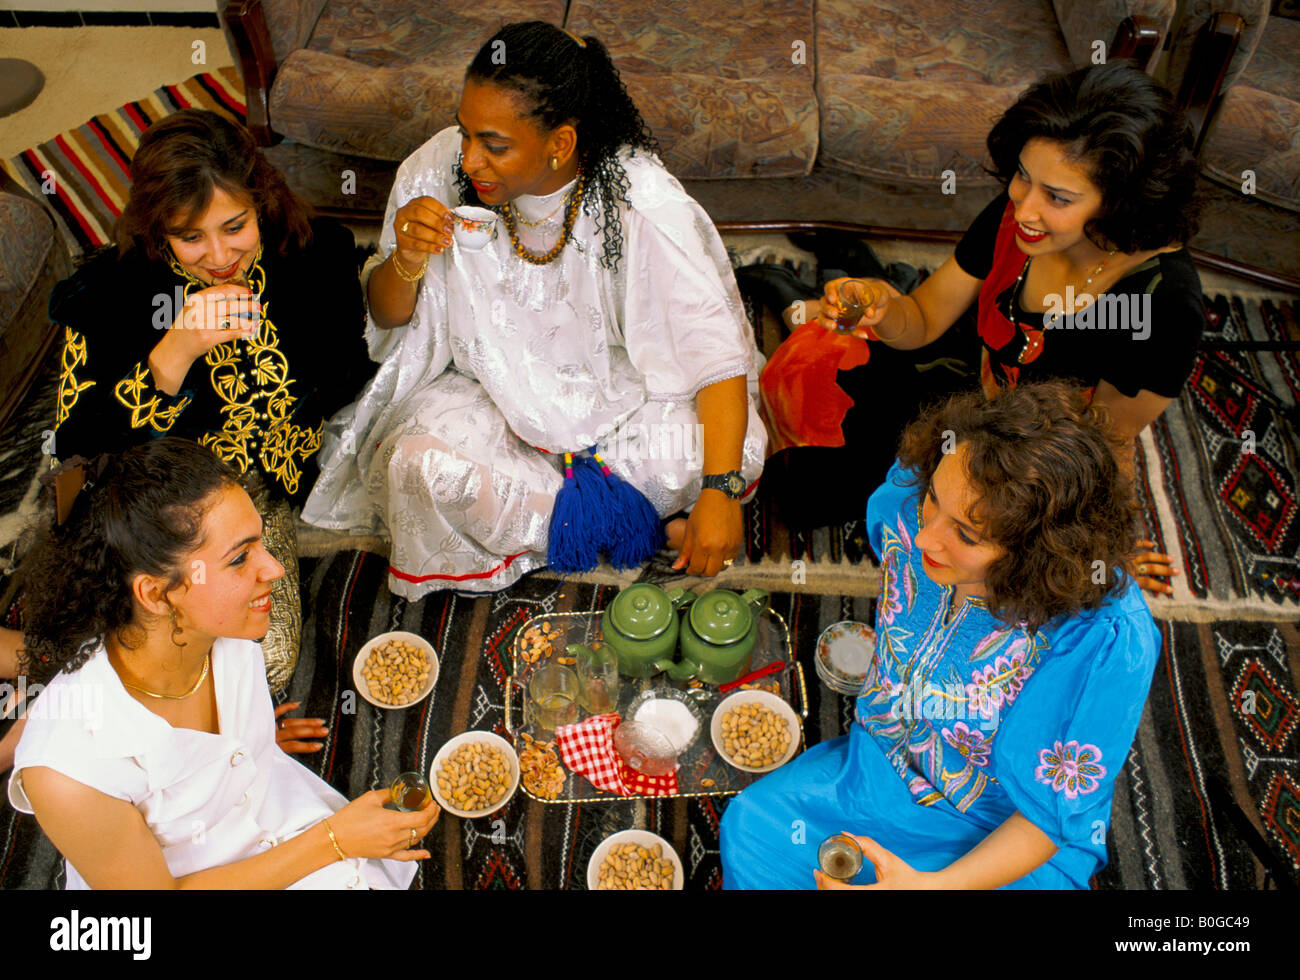 Un groupe de femmes assises sur le plancher tout en buvant du thé, de l'Algérie. Banque D'Images